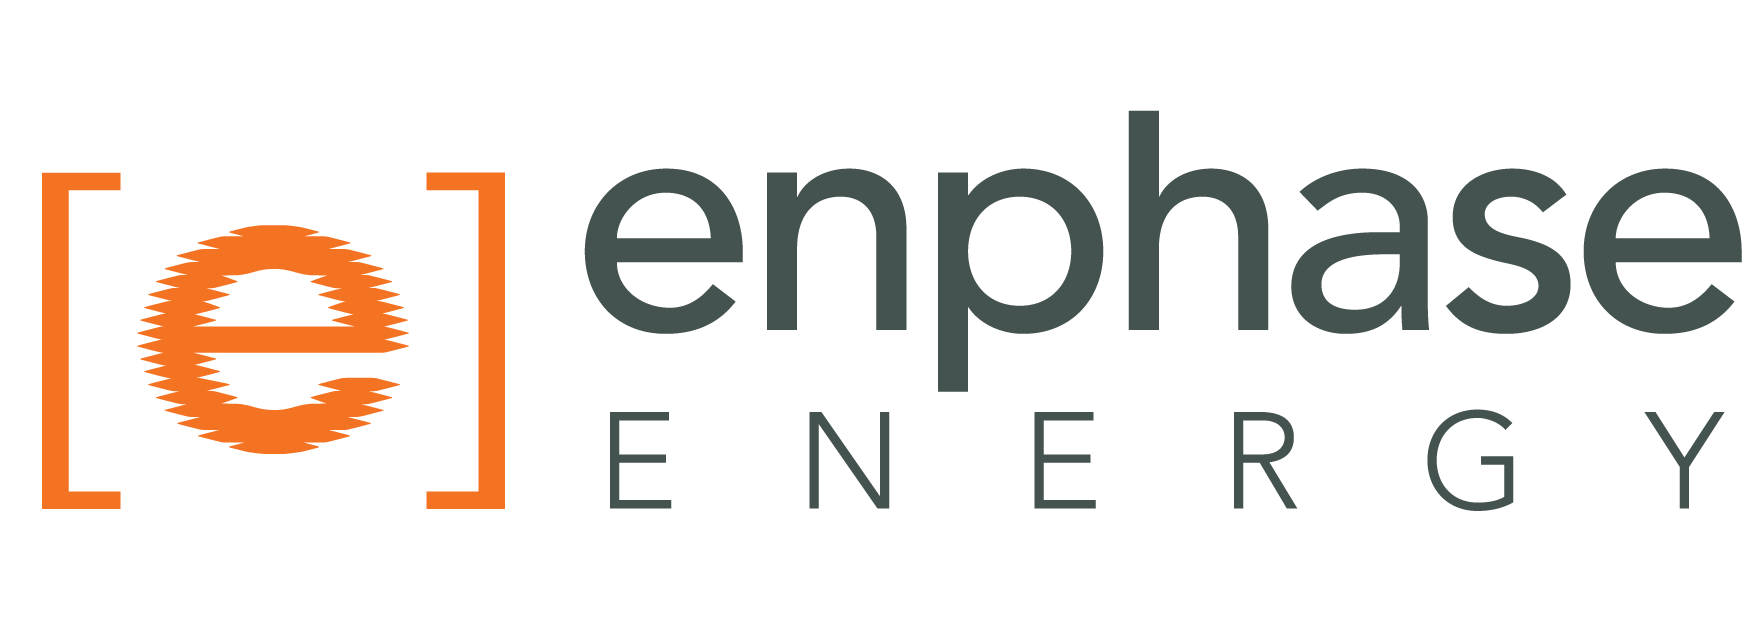 Enphase est une entreprise mondiale de technologie de gestion de l'énergie qui propose des solutions de production et de stockage d'énergie solaire à usage domestique